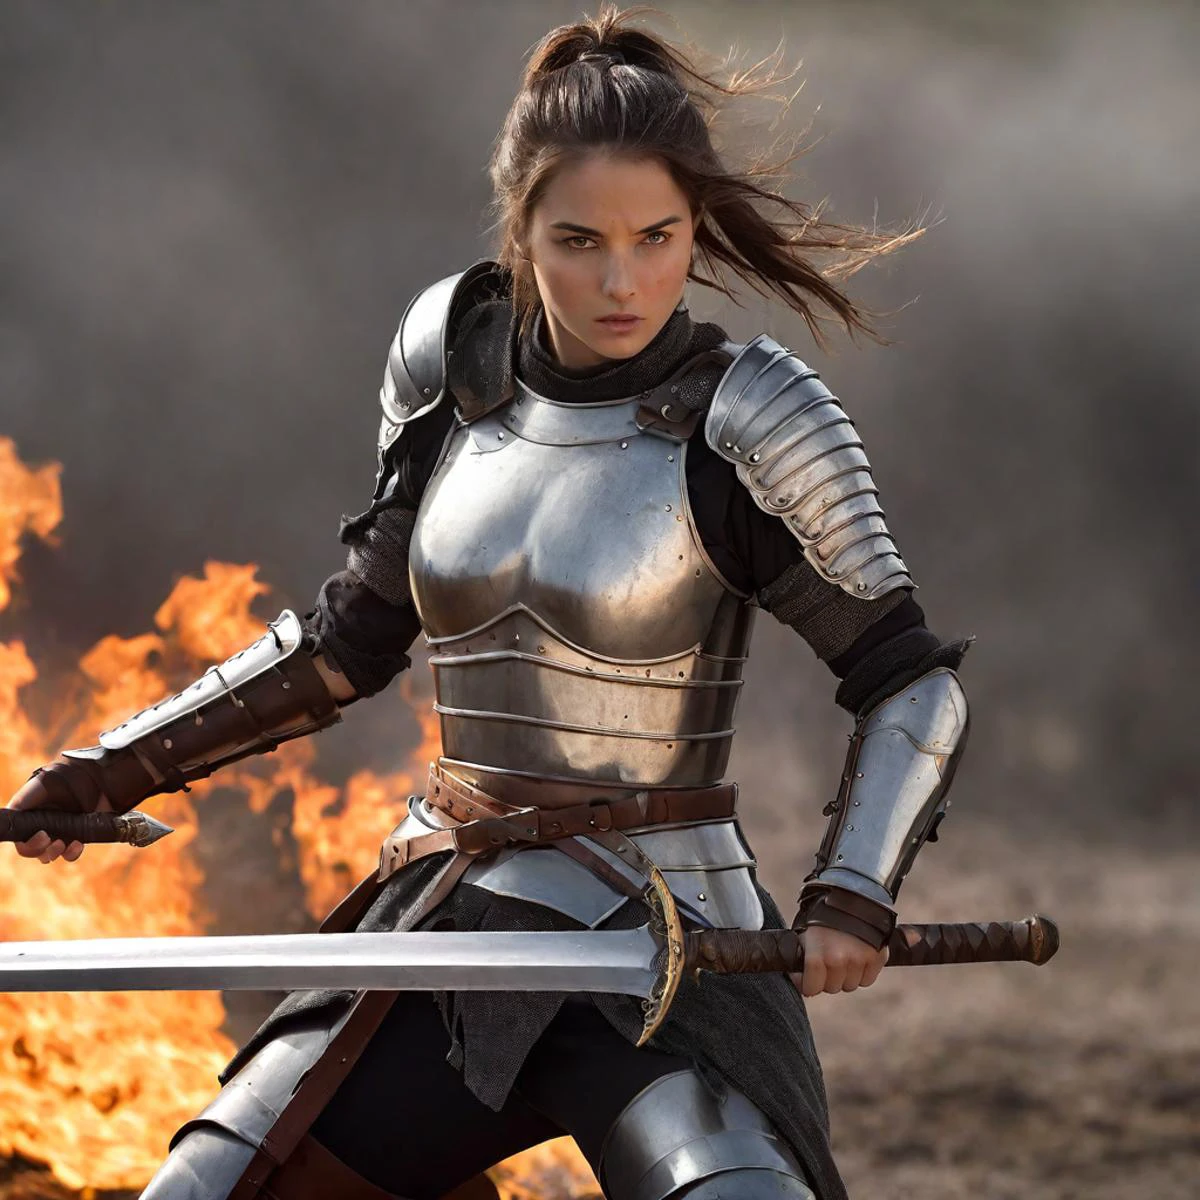 Erstaunliches Qualitätsfoto einer voll gepanzerten Kriegerin auf einem von Flammen gezeichneten Schlachtfeld, die ein Breitschwert schwingt